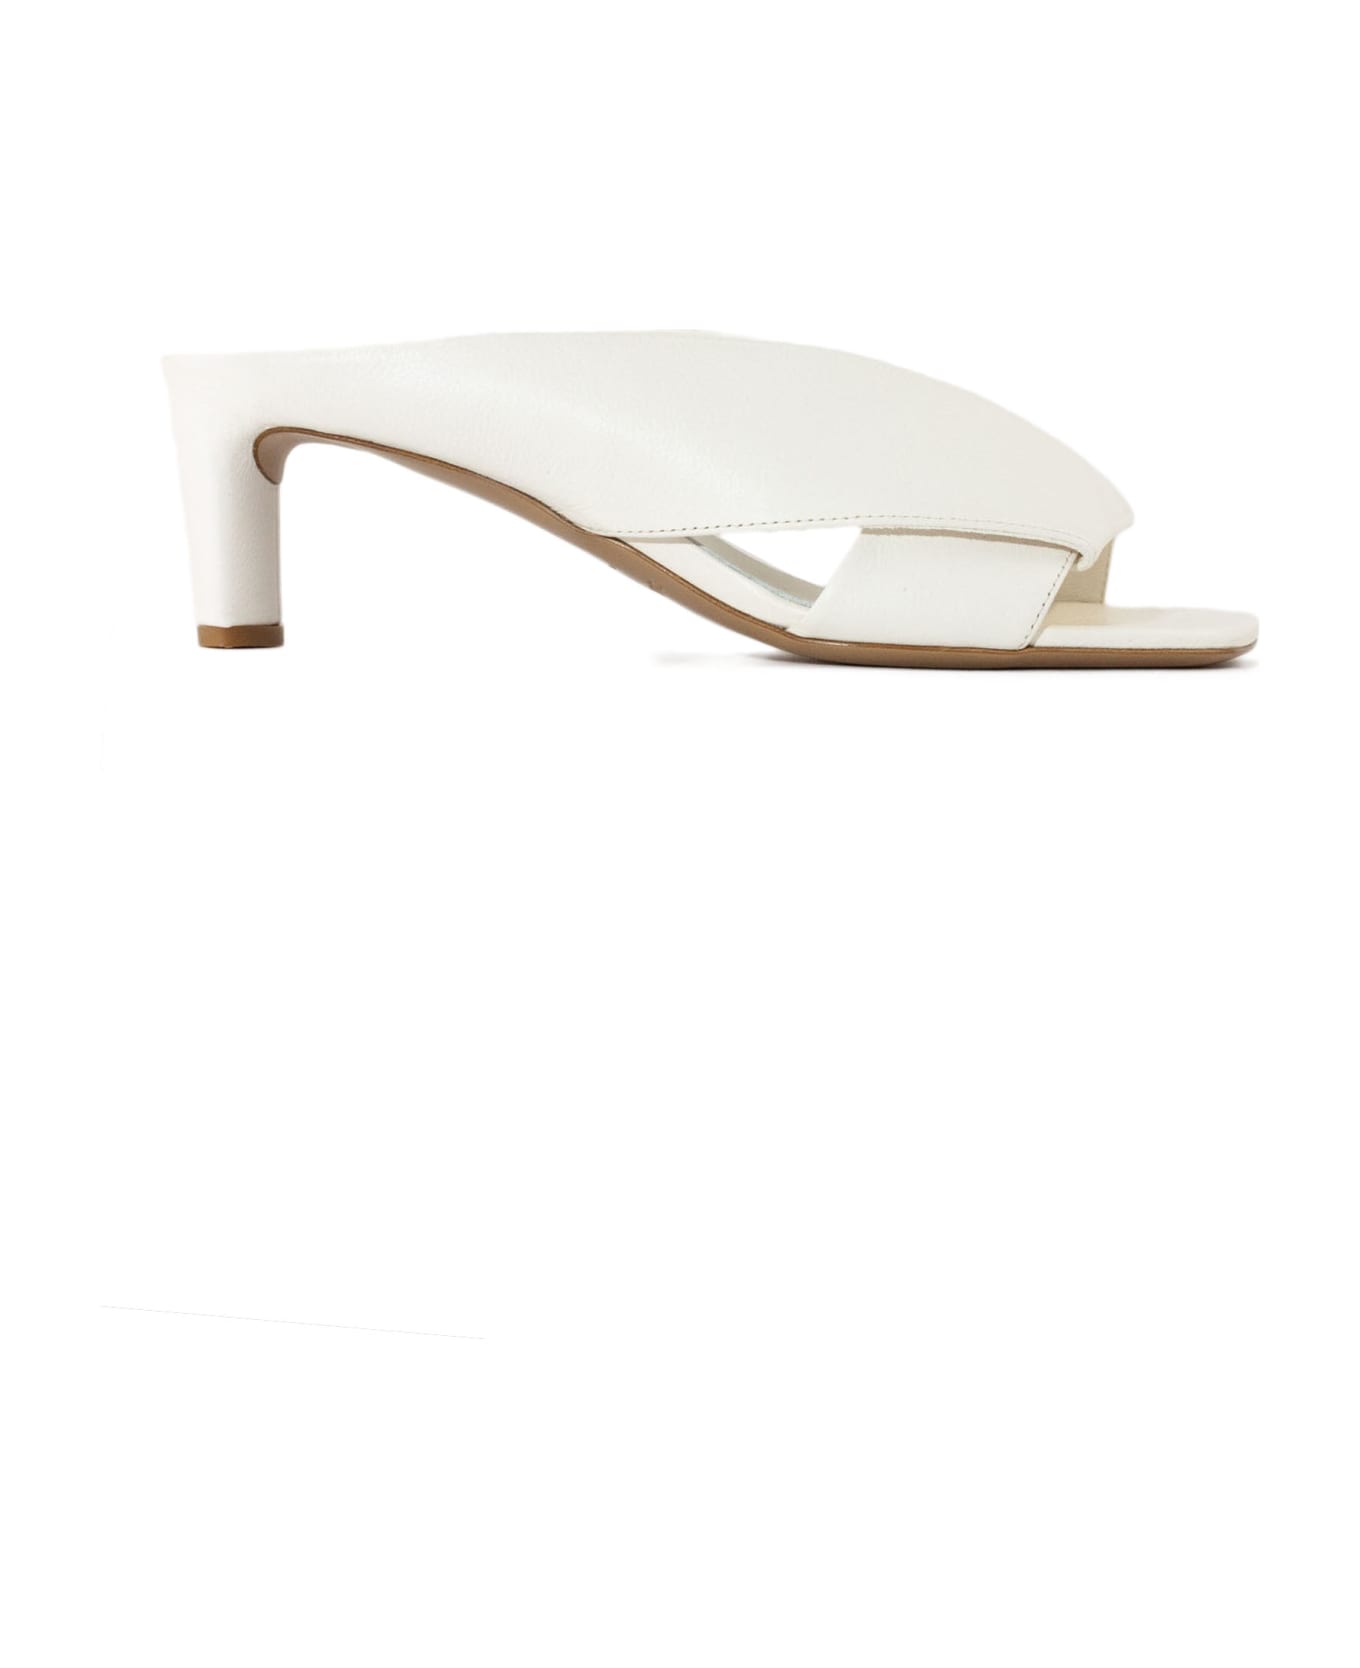 Del Carlo White Calf Leather Sandals - White